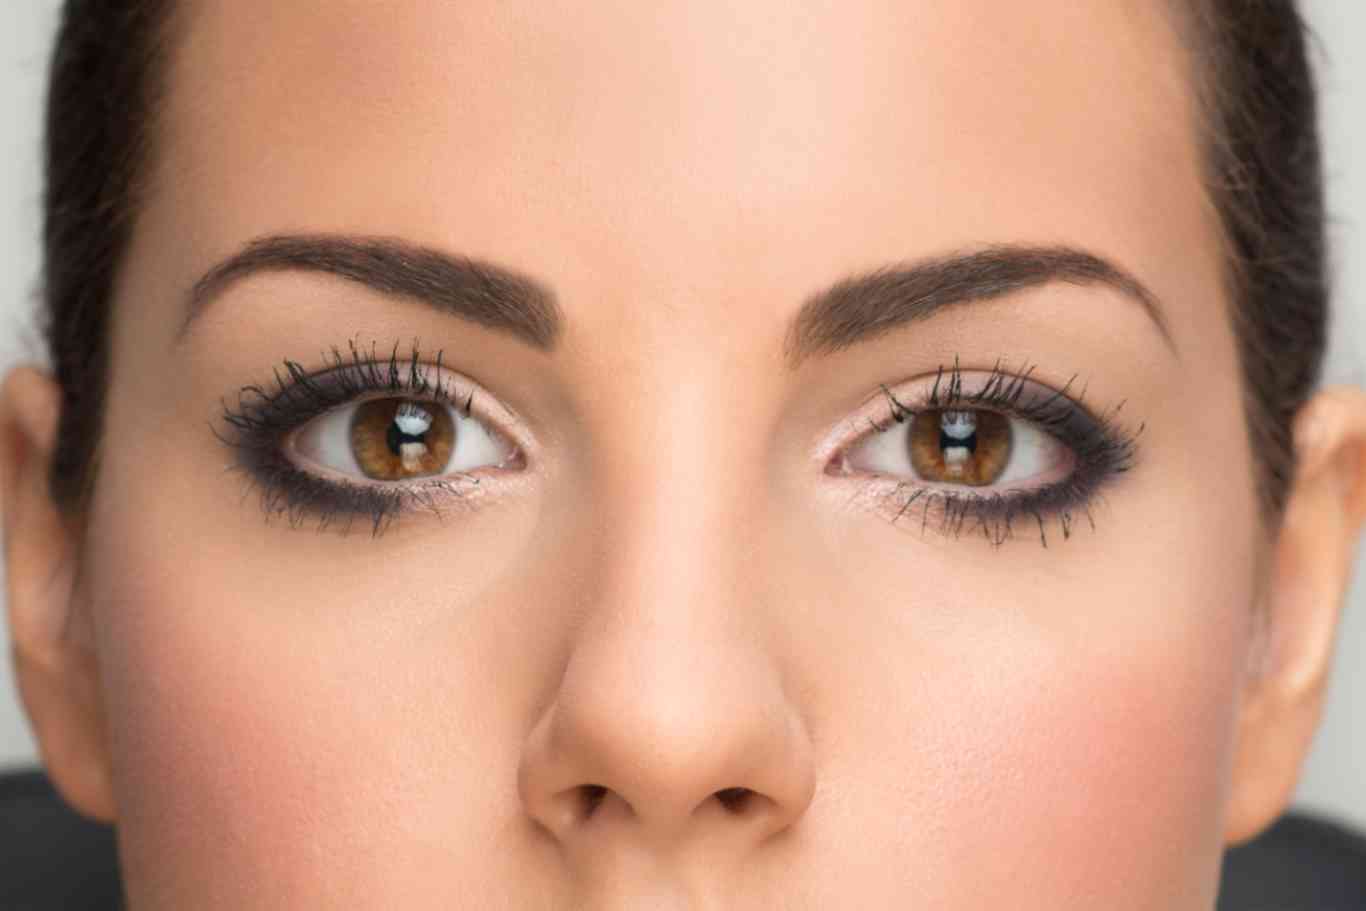 Eyeliner permanente: todas las ventajas e inconvenientes de tatuarse la raya del ojo